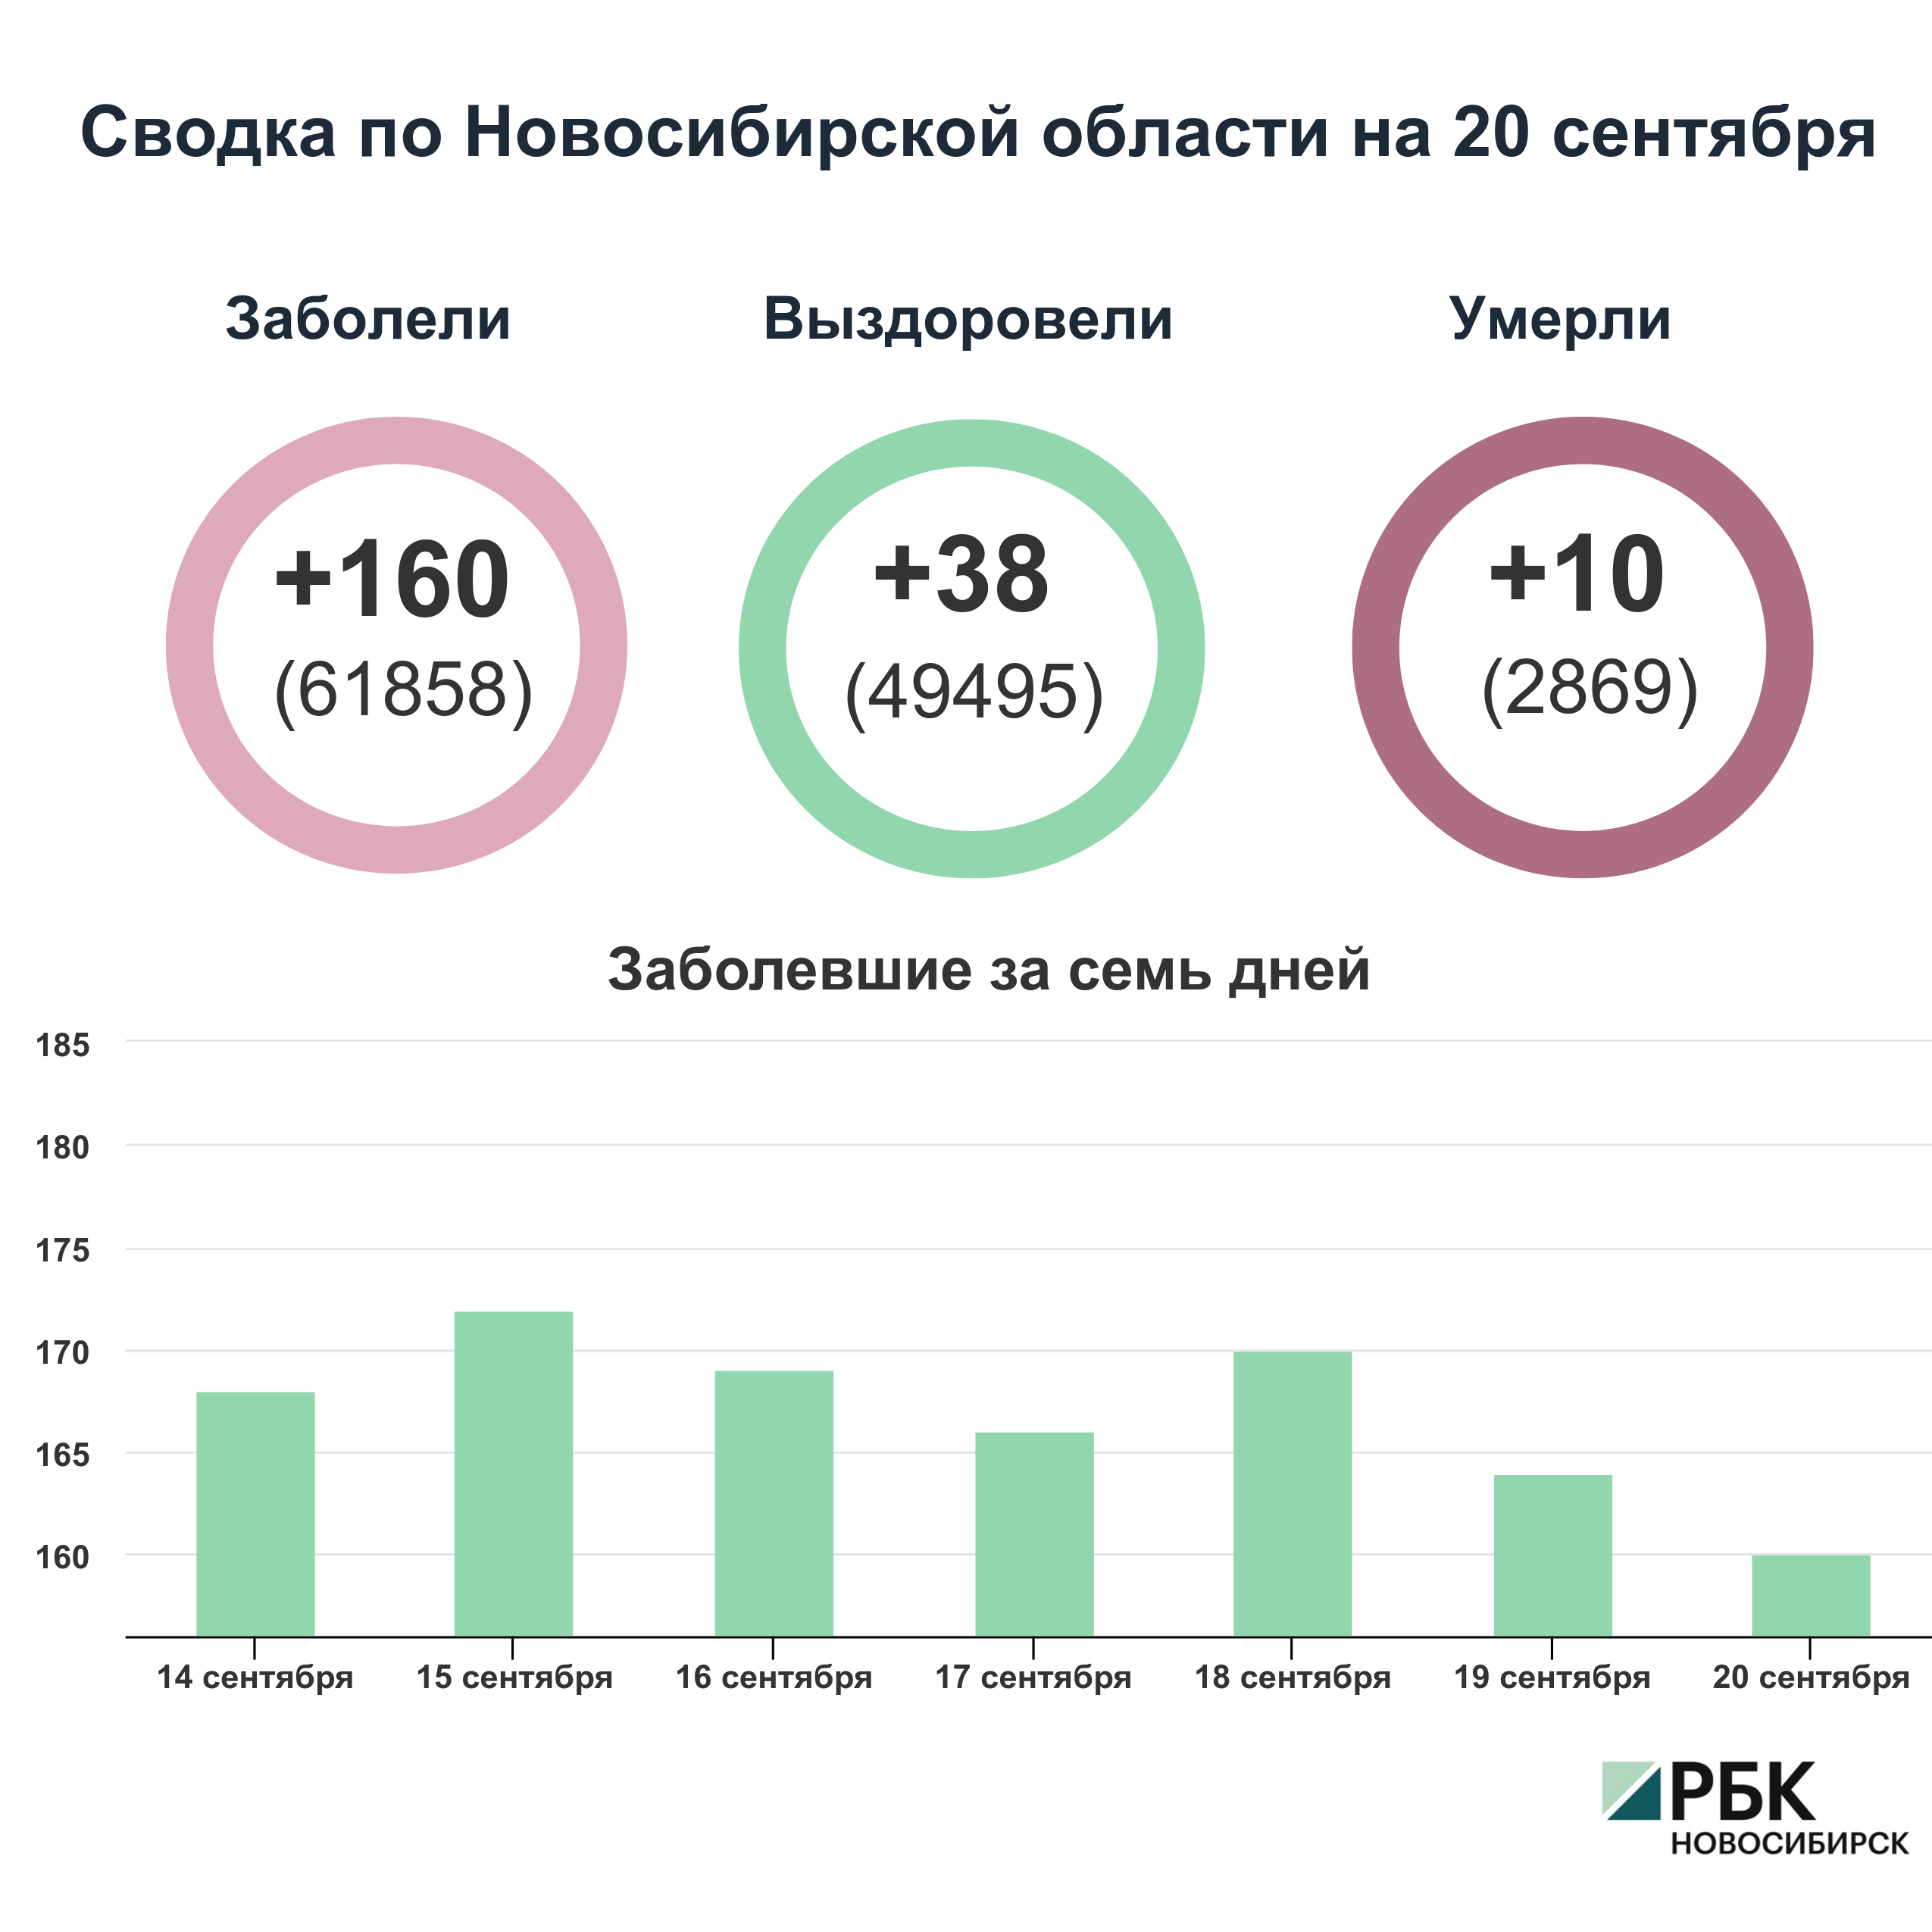 Коронавирус в Новосибирске: сводка на 20 сентября